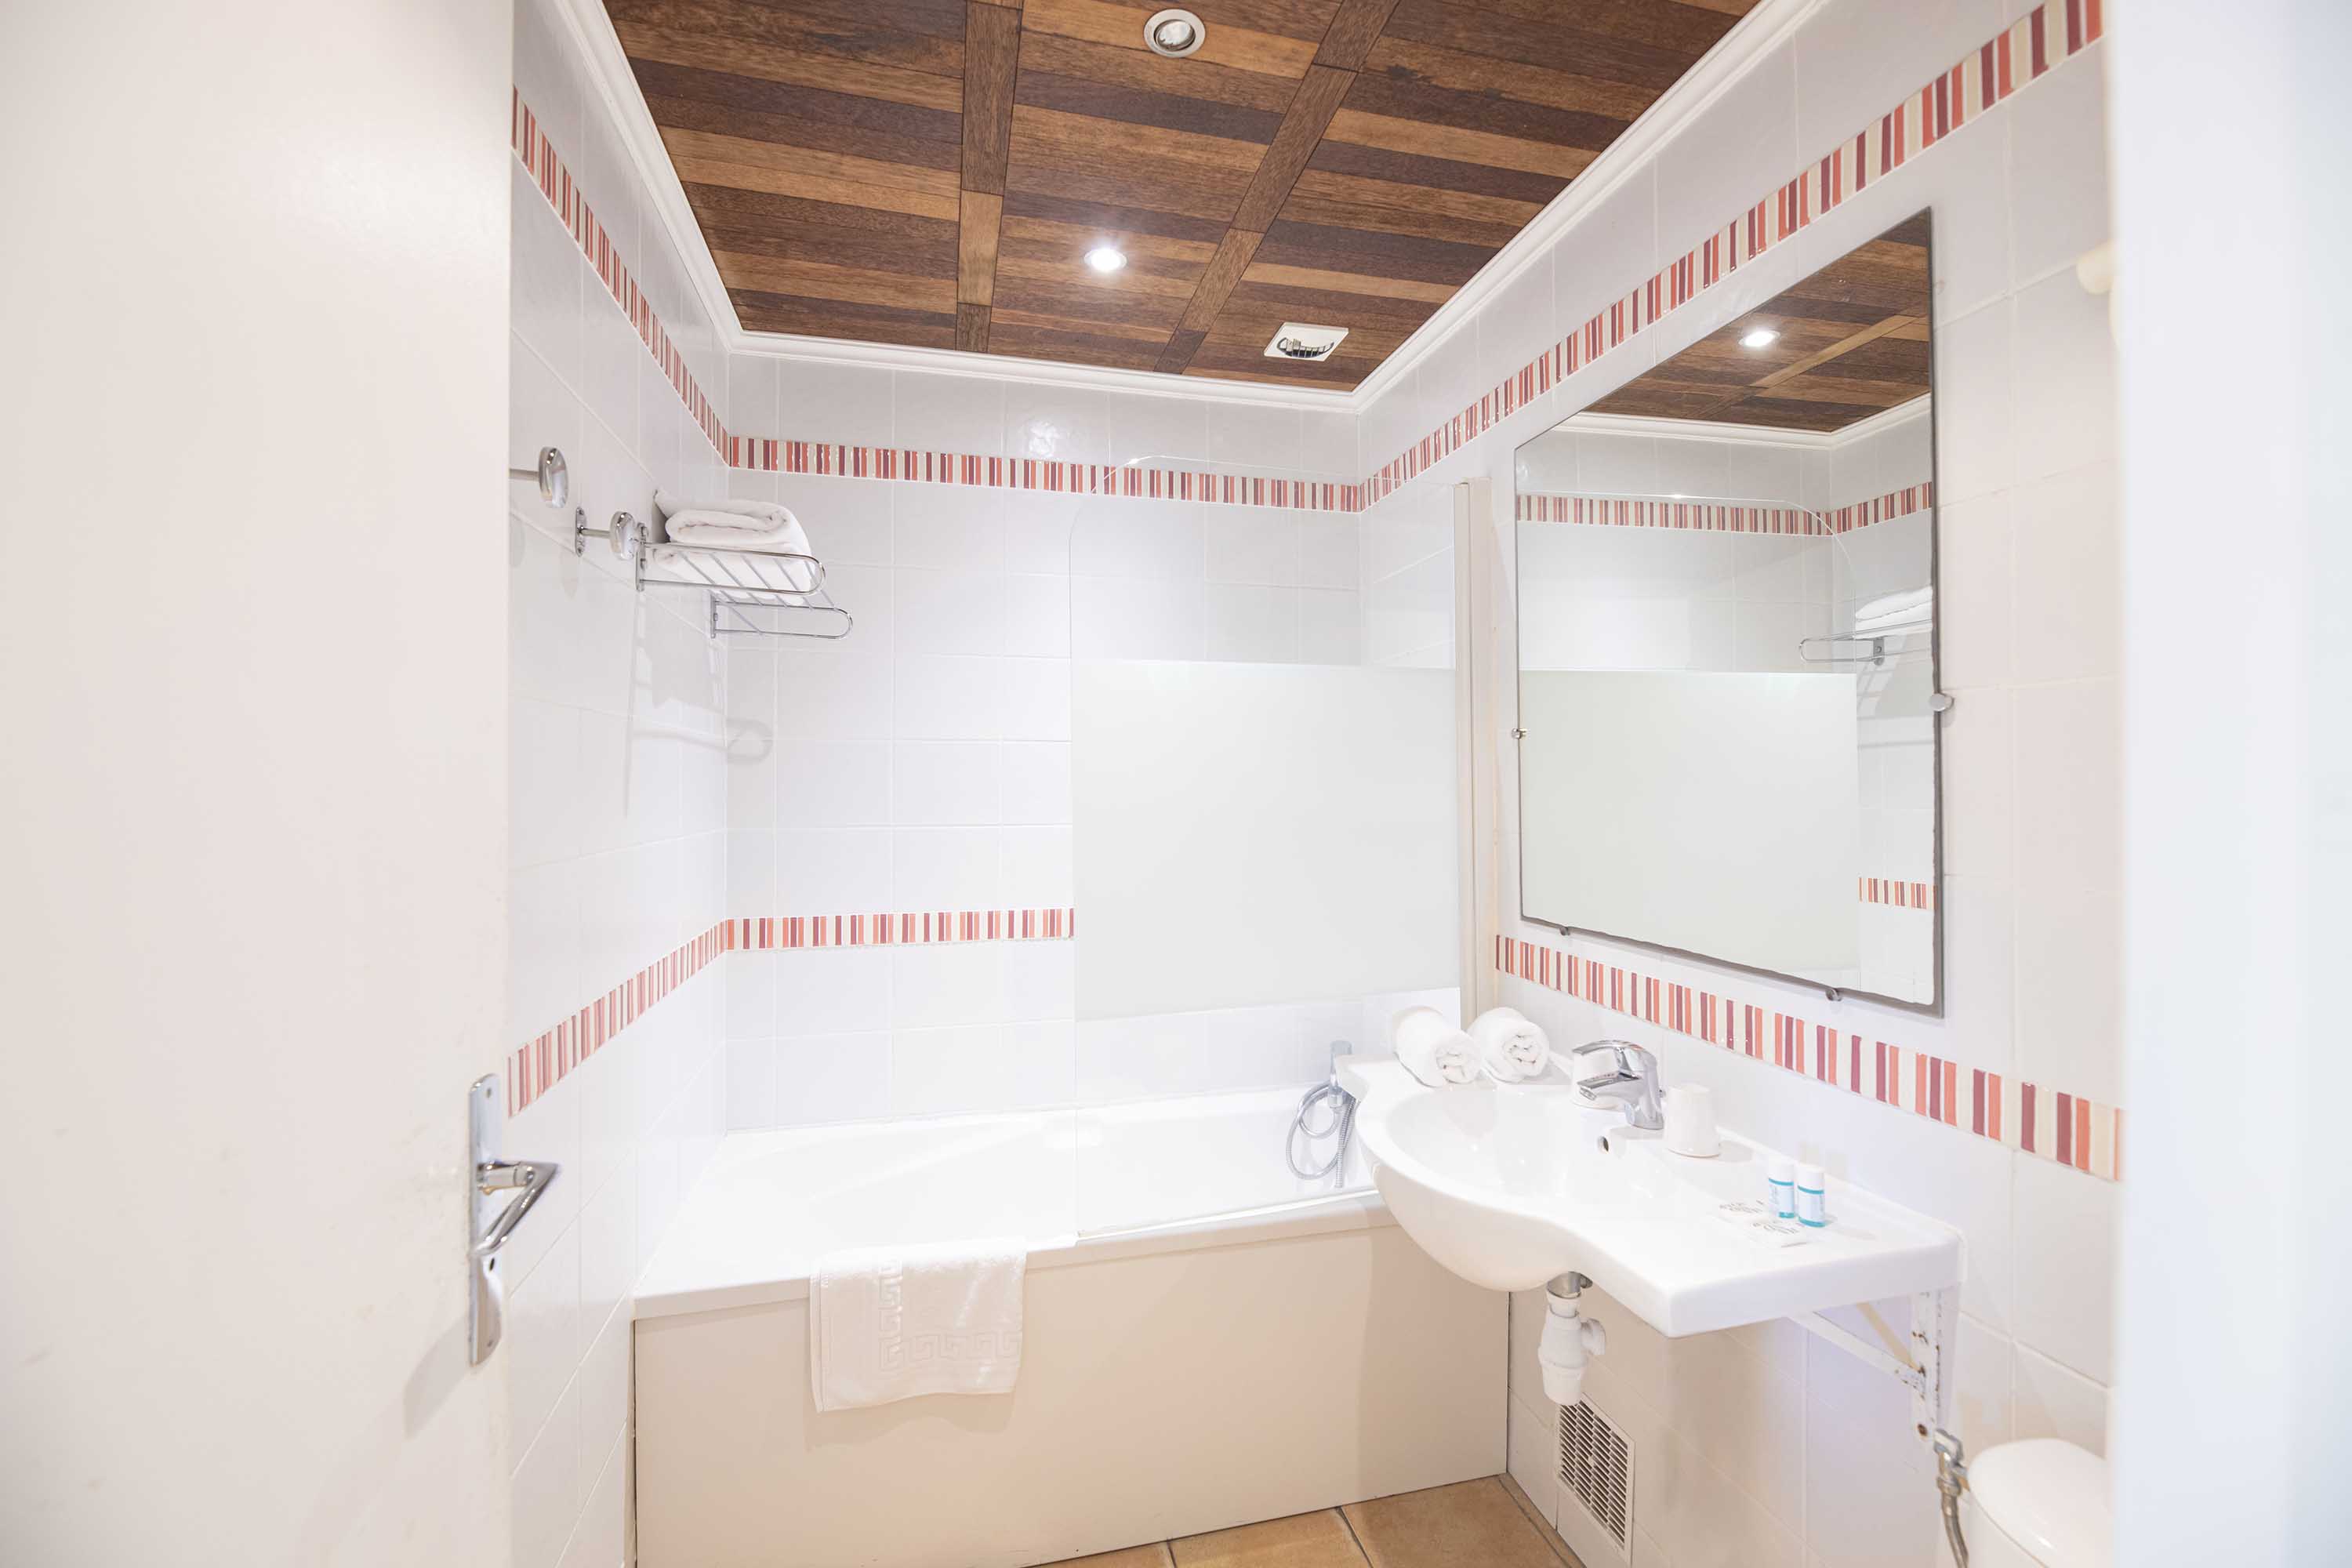 Vue d'une salle de bain avec baignoire | Source : Hôtel Le Relais des Cîmes - www.relaisdescimes.com